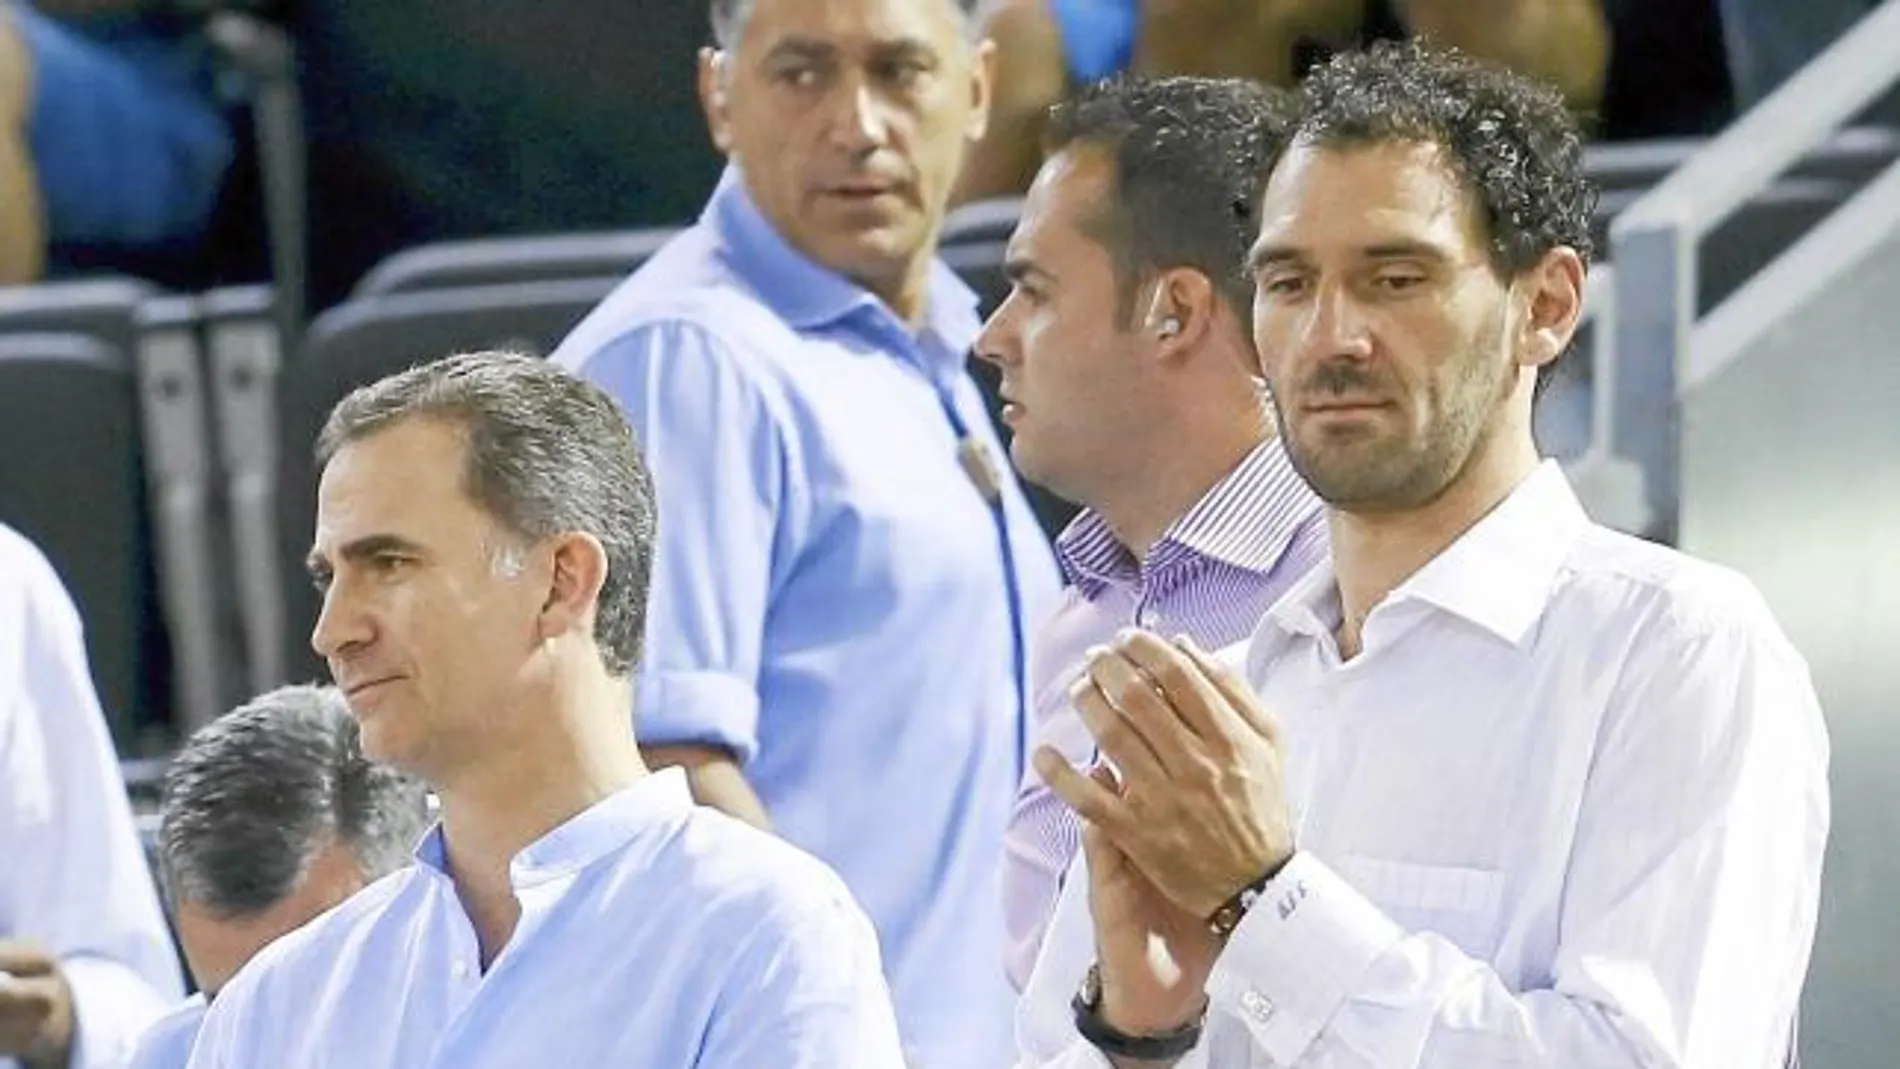 El Rey, junto a Jorge Garbajosa, presidente de la federación española de baloncesto, ayer durante el partido de España contra Venezuela